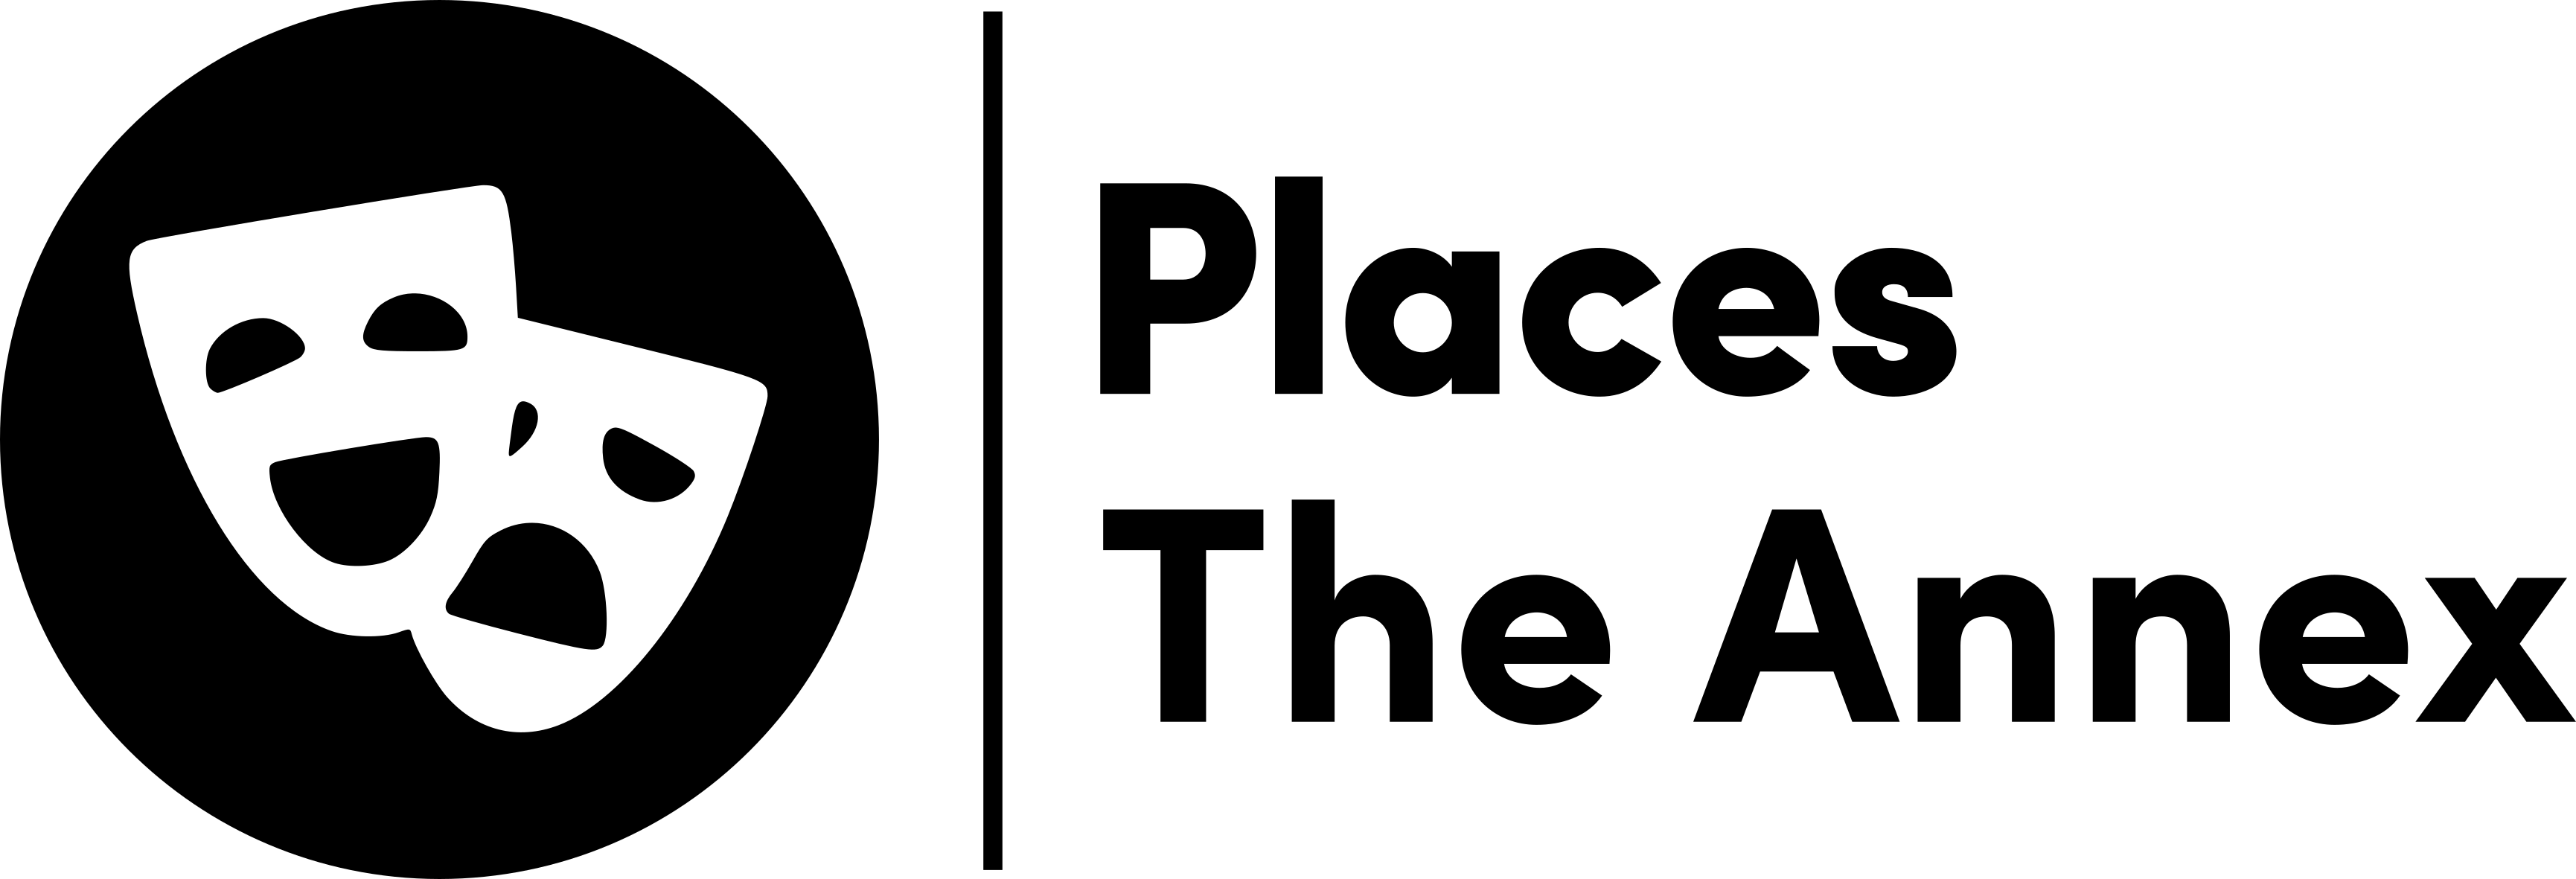 The Annex logo